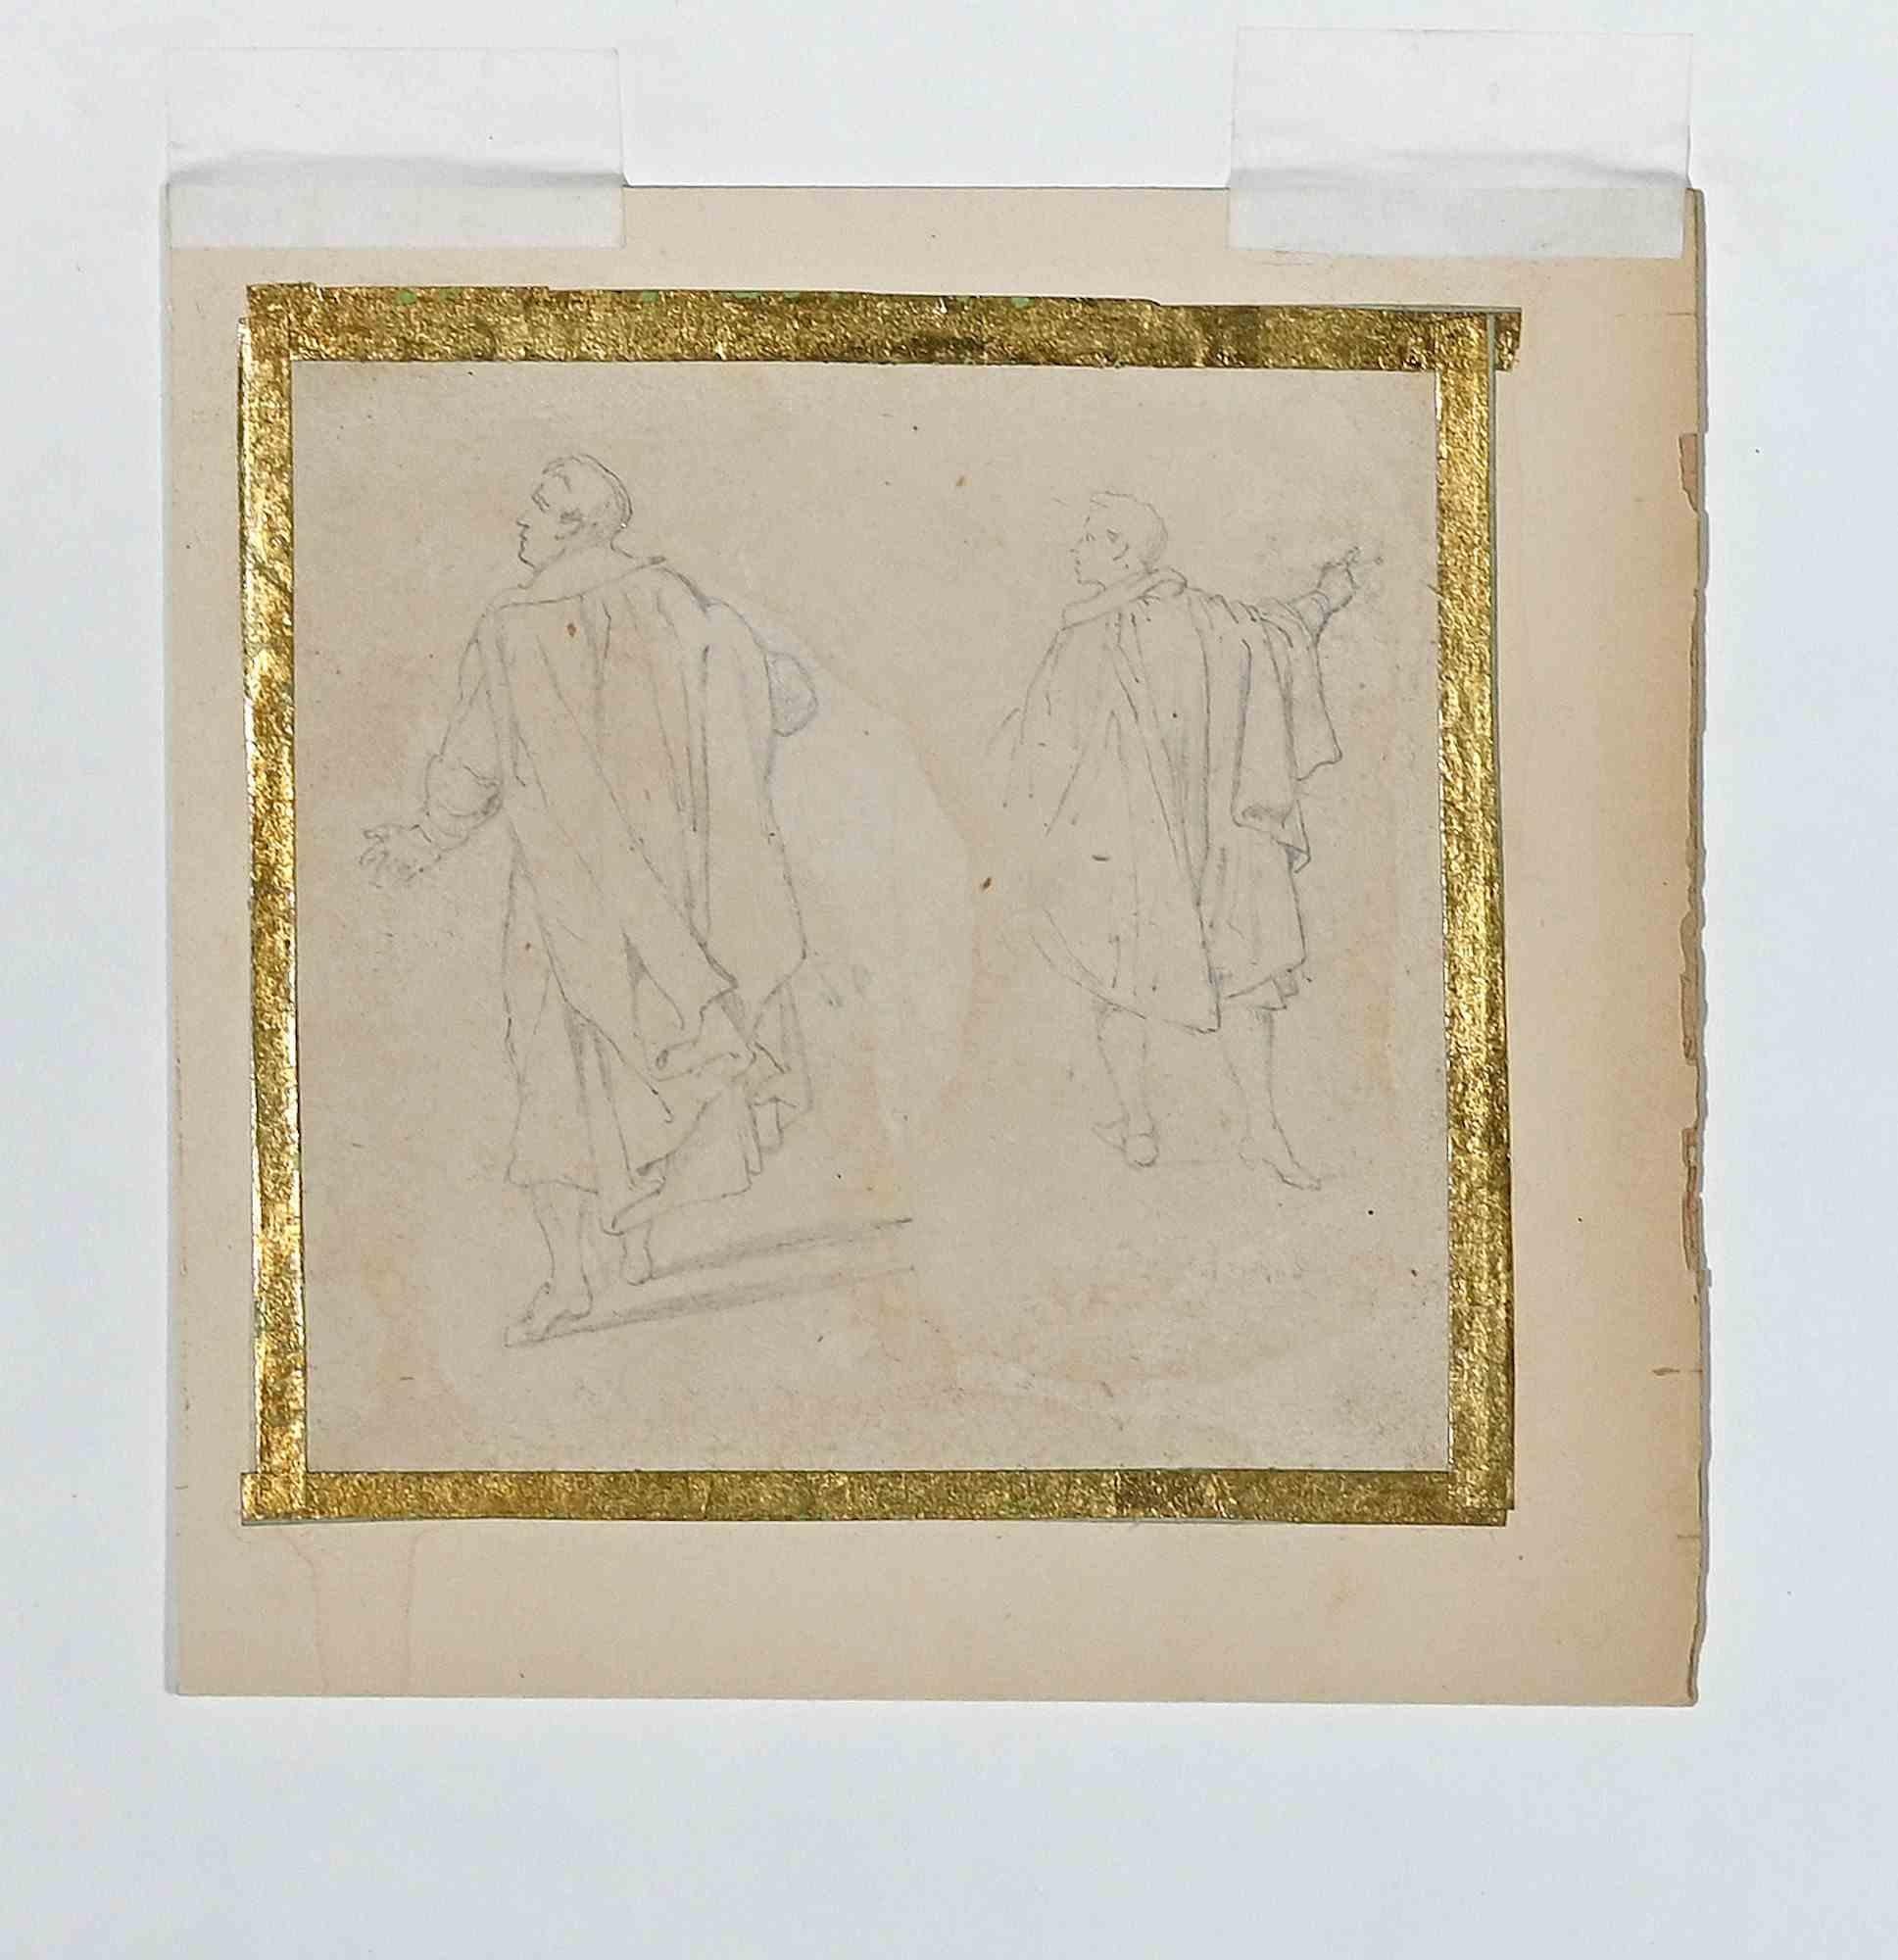 Die Figuren sind eine Originalzeichnung in Bleistift von Jules David aus dem 19. Jahrhundert.

Das Kunstwerk ist in einer ausgewogenen Komposition realisiert.